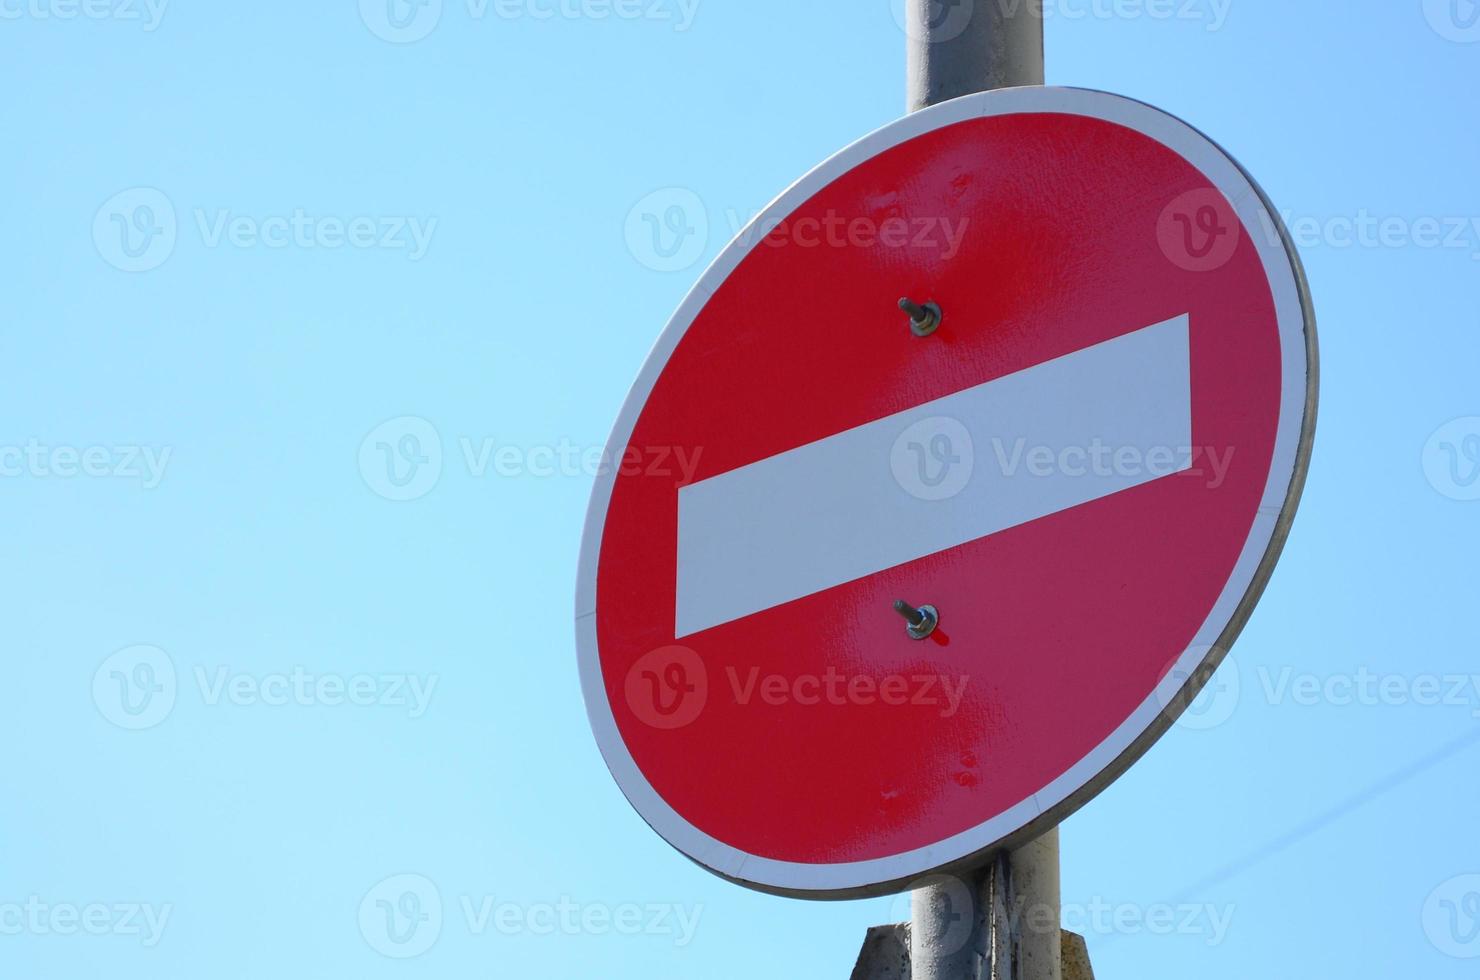 sinal de trânsito na forma de um retângulo branco em um círculo vermelho. Entrada proibida foto